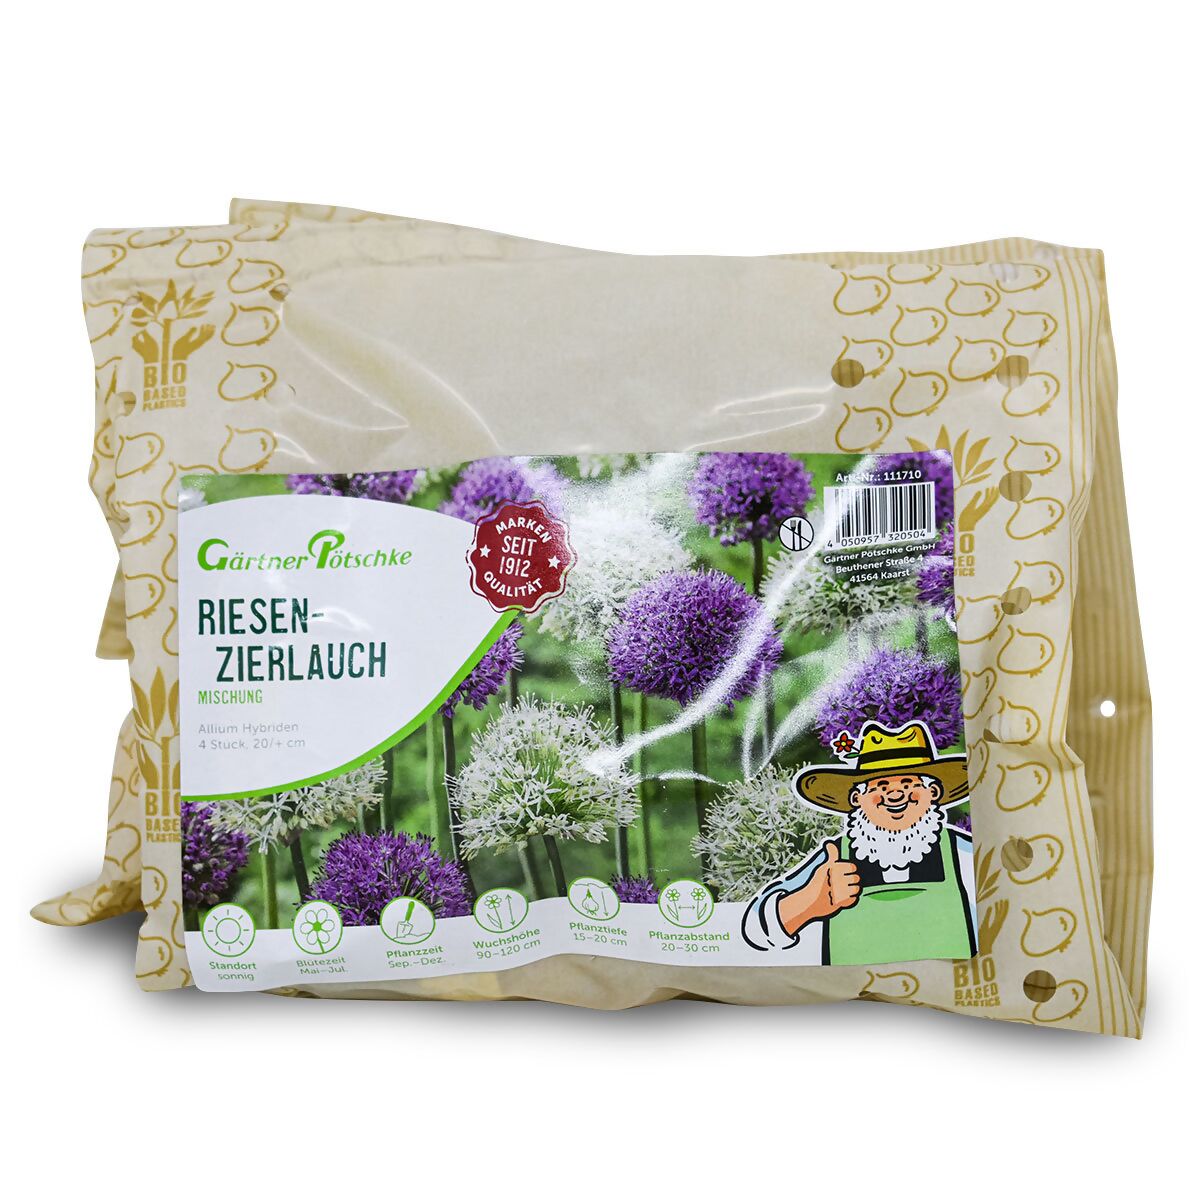 bei kaufen Riesenzierlauch Blumenzwiebel-Set Pötschke online Gärtner